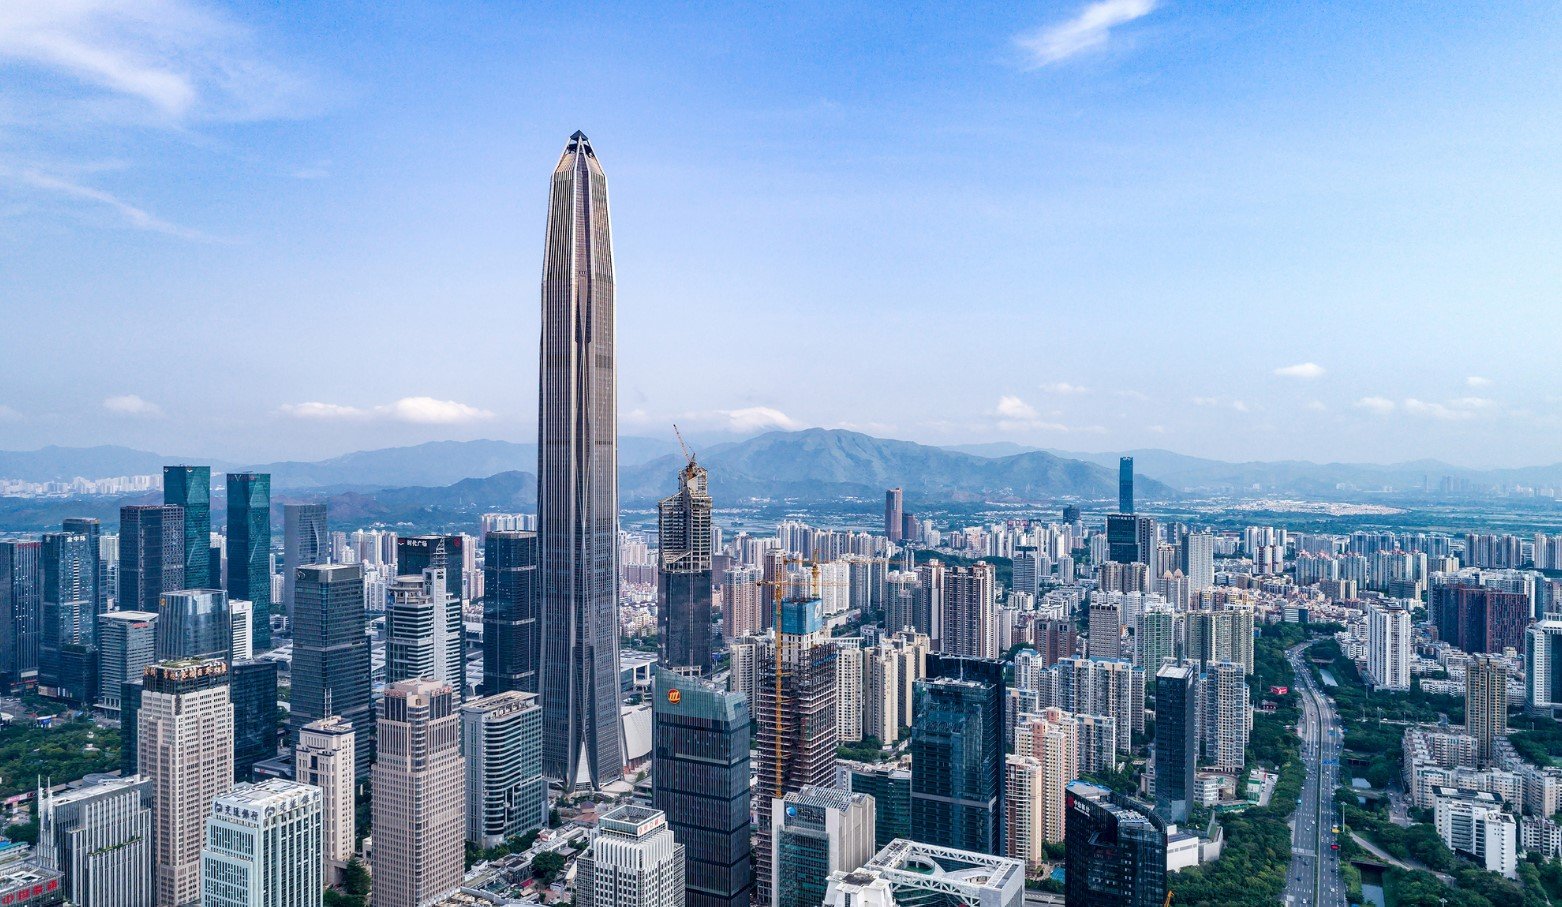 Ping An Finance Center Shenzhen Guangdong tallest building travelhyme